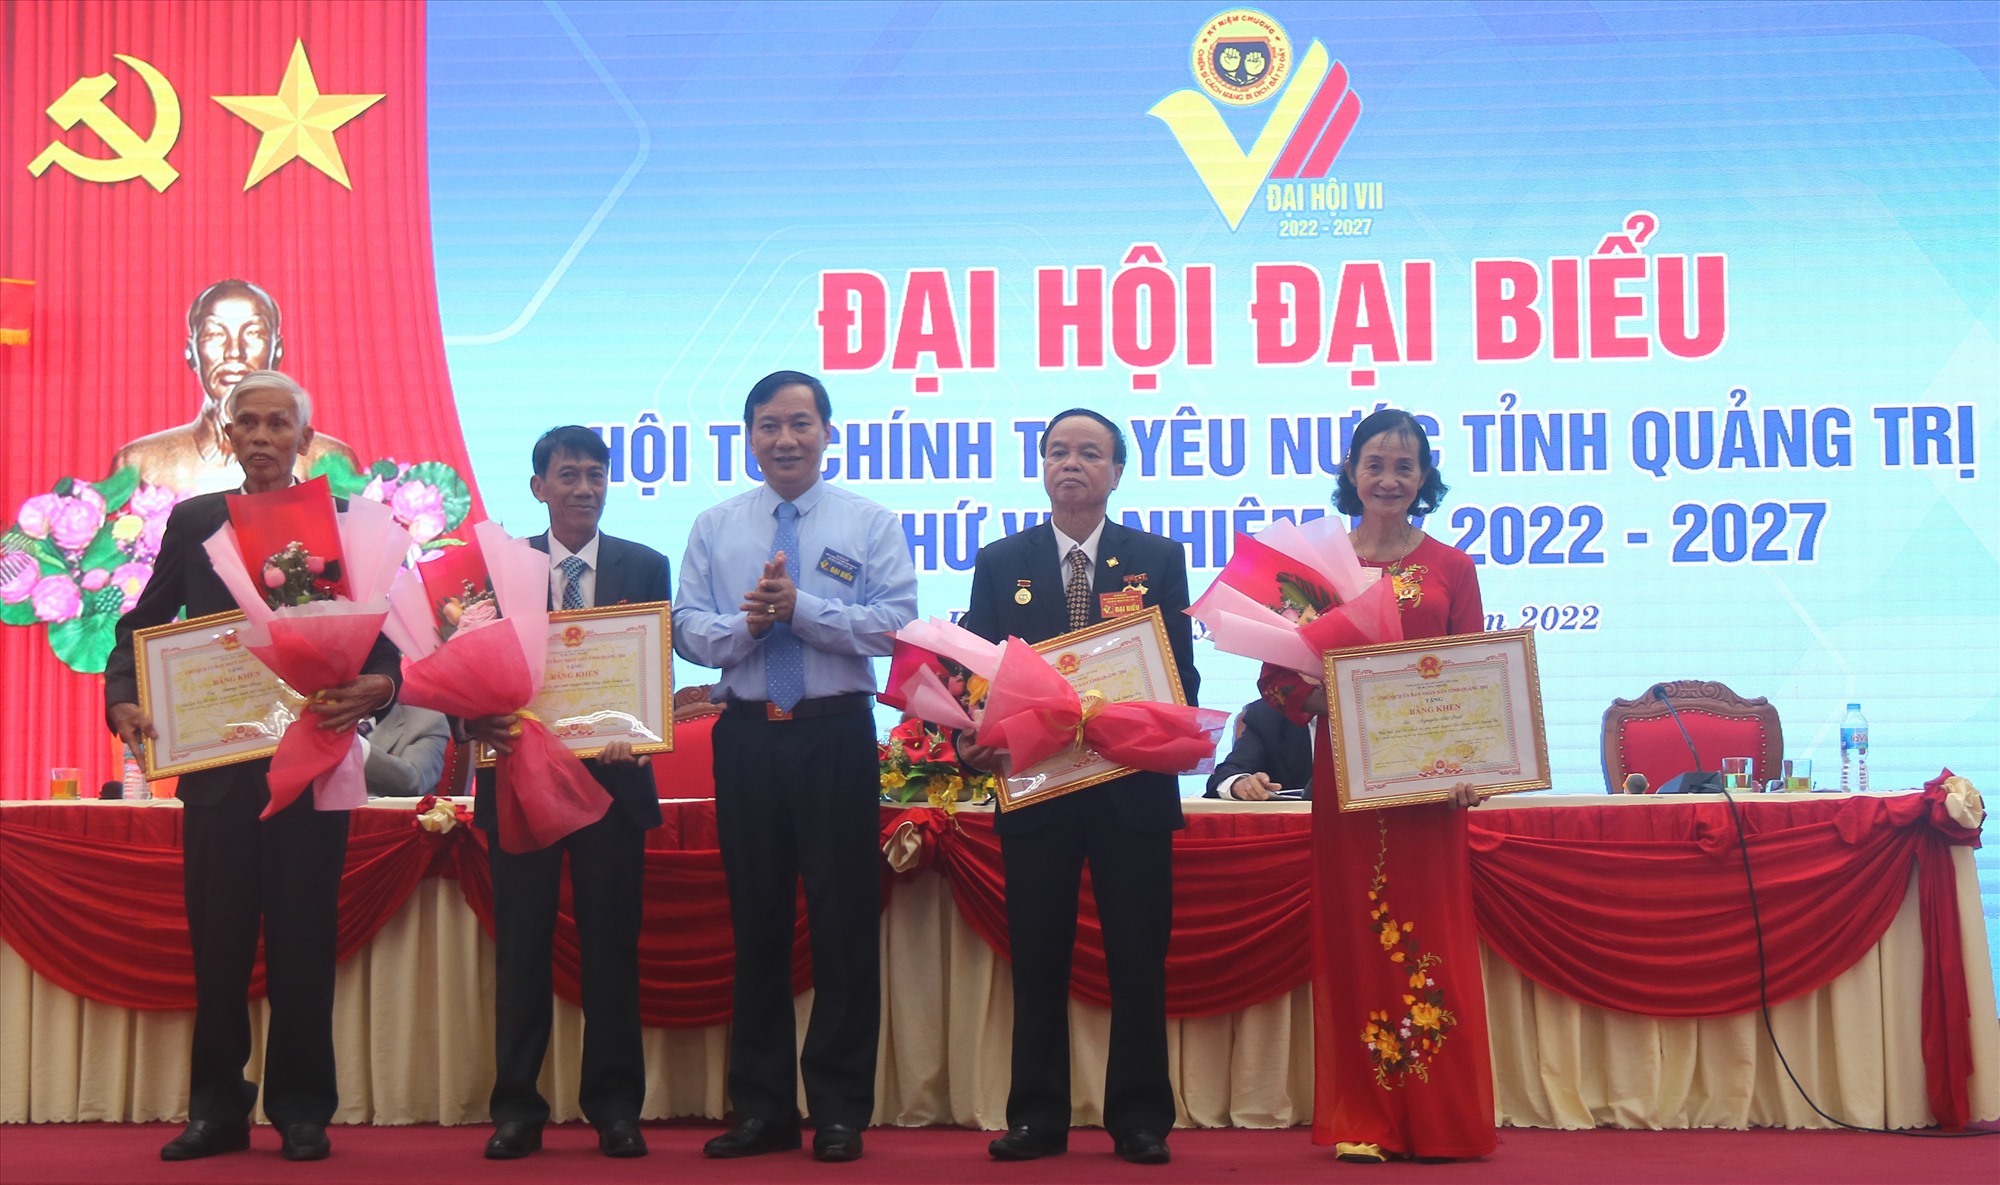 Phó Chủ tịch Thường trực HĐND tỉnh Lê Quang Chiến tặng bằng khen cho các cá nhân có nhiều thành tích trong phong trào hoạt động và xây dựng tổ chức hội - Ảnh: N.B